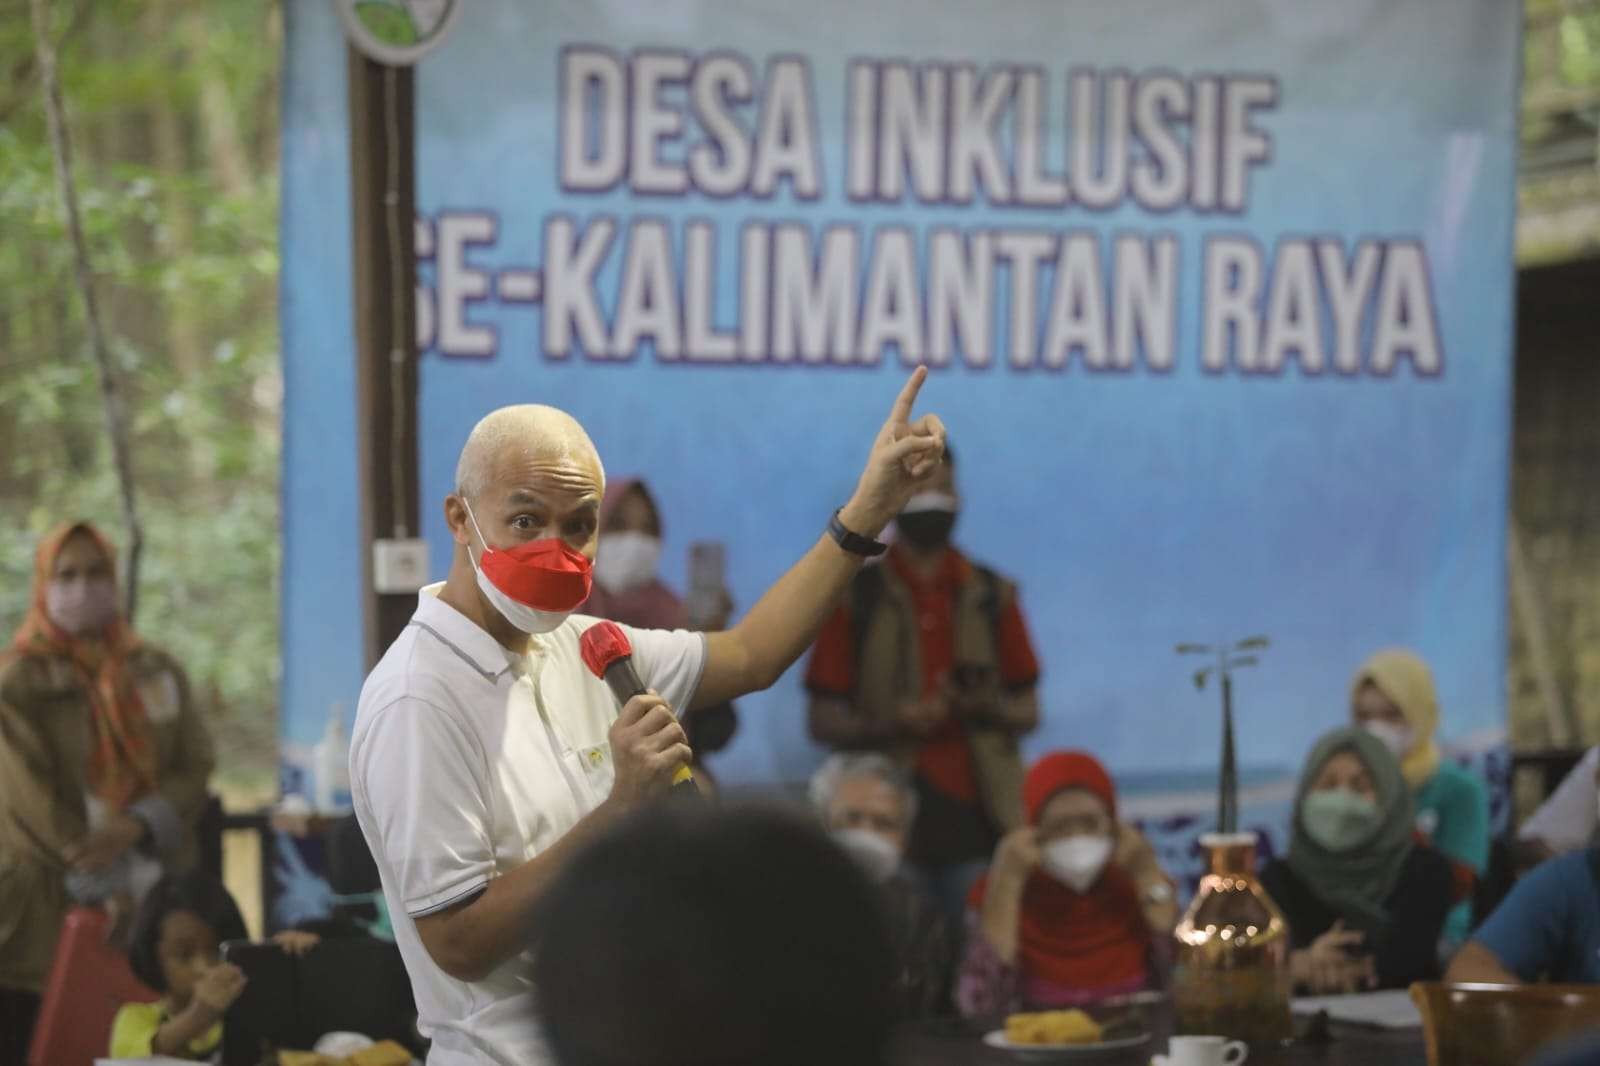 Gubernur Jawa Tengah Ganjar Pranowo saat berada di Desa Inklusif se-Kalimantan Raya. (Foto: Istimewa)